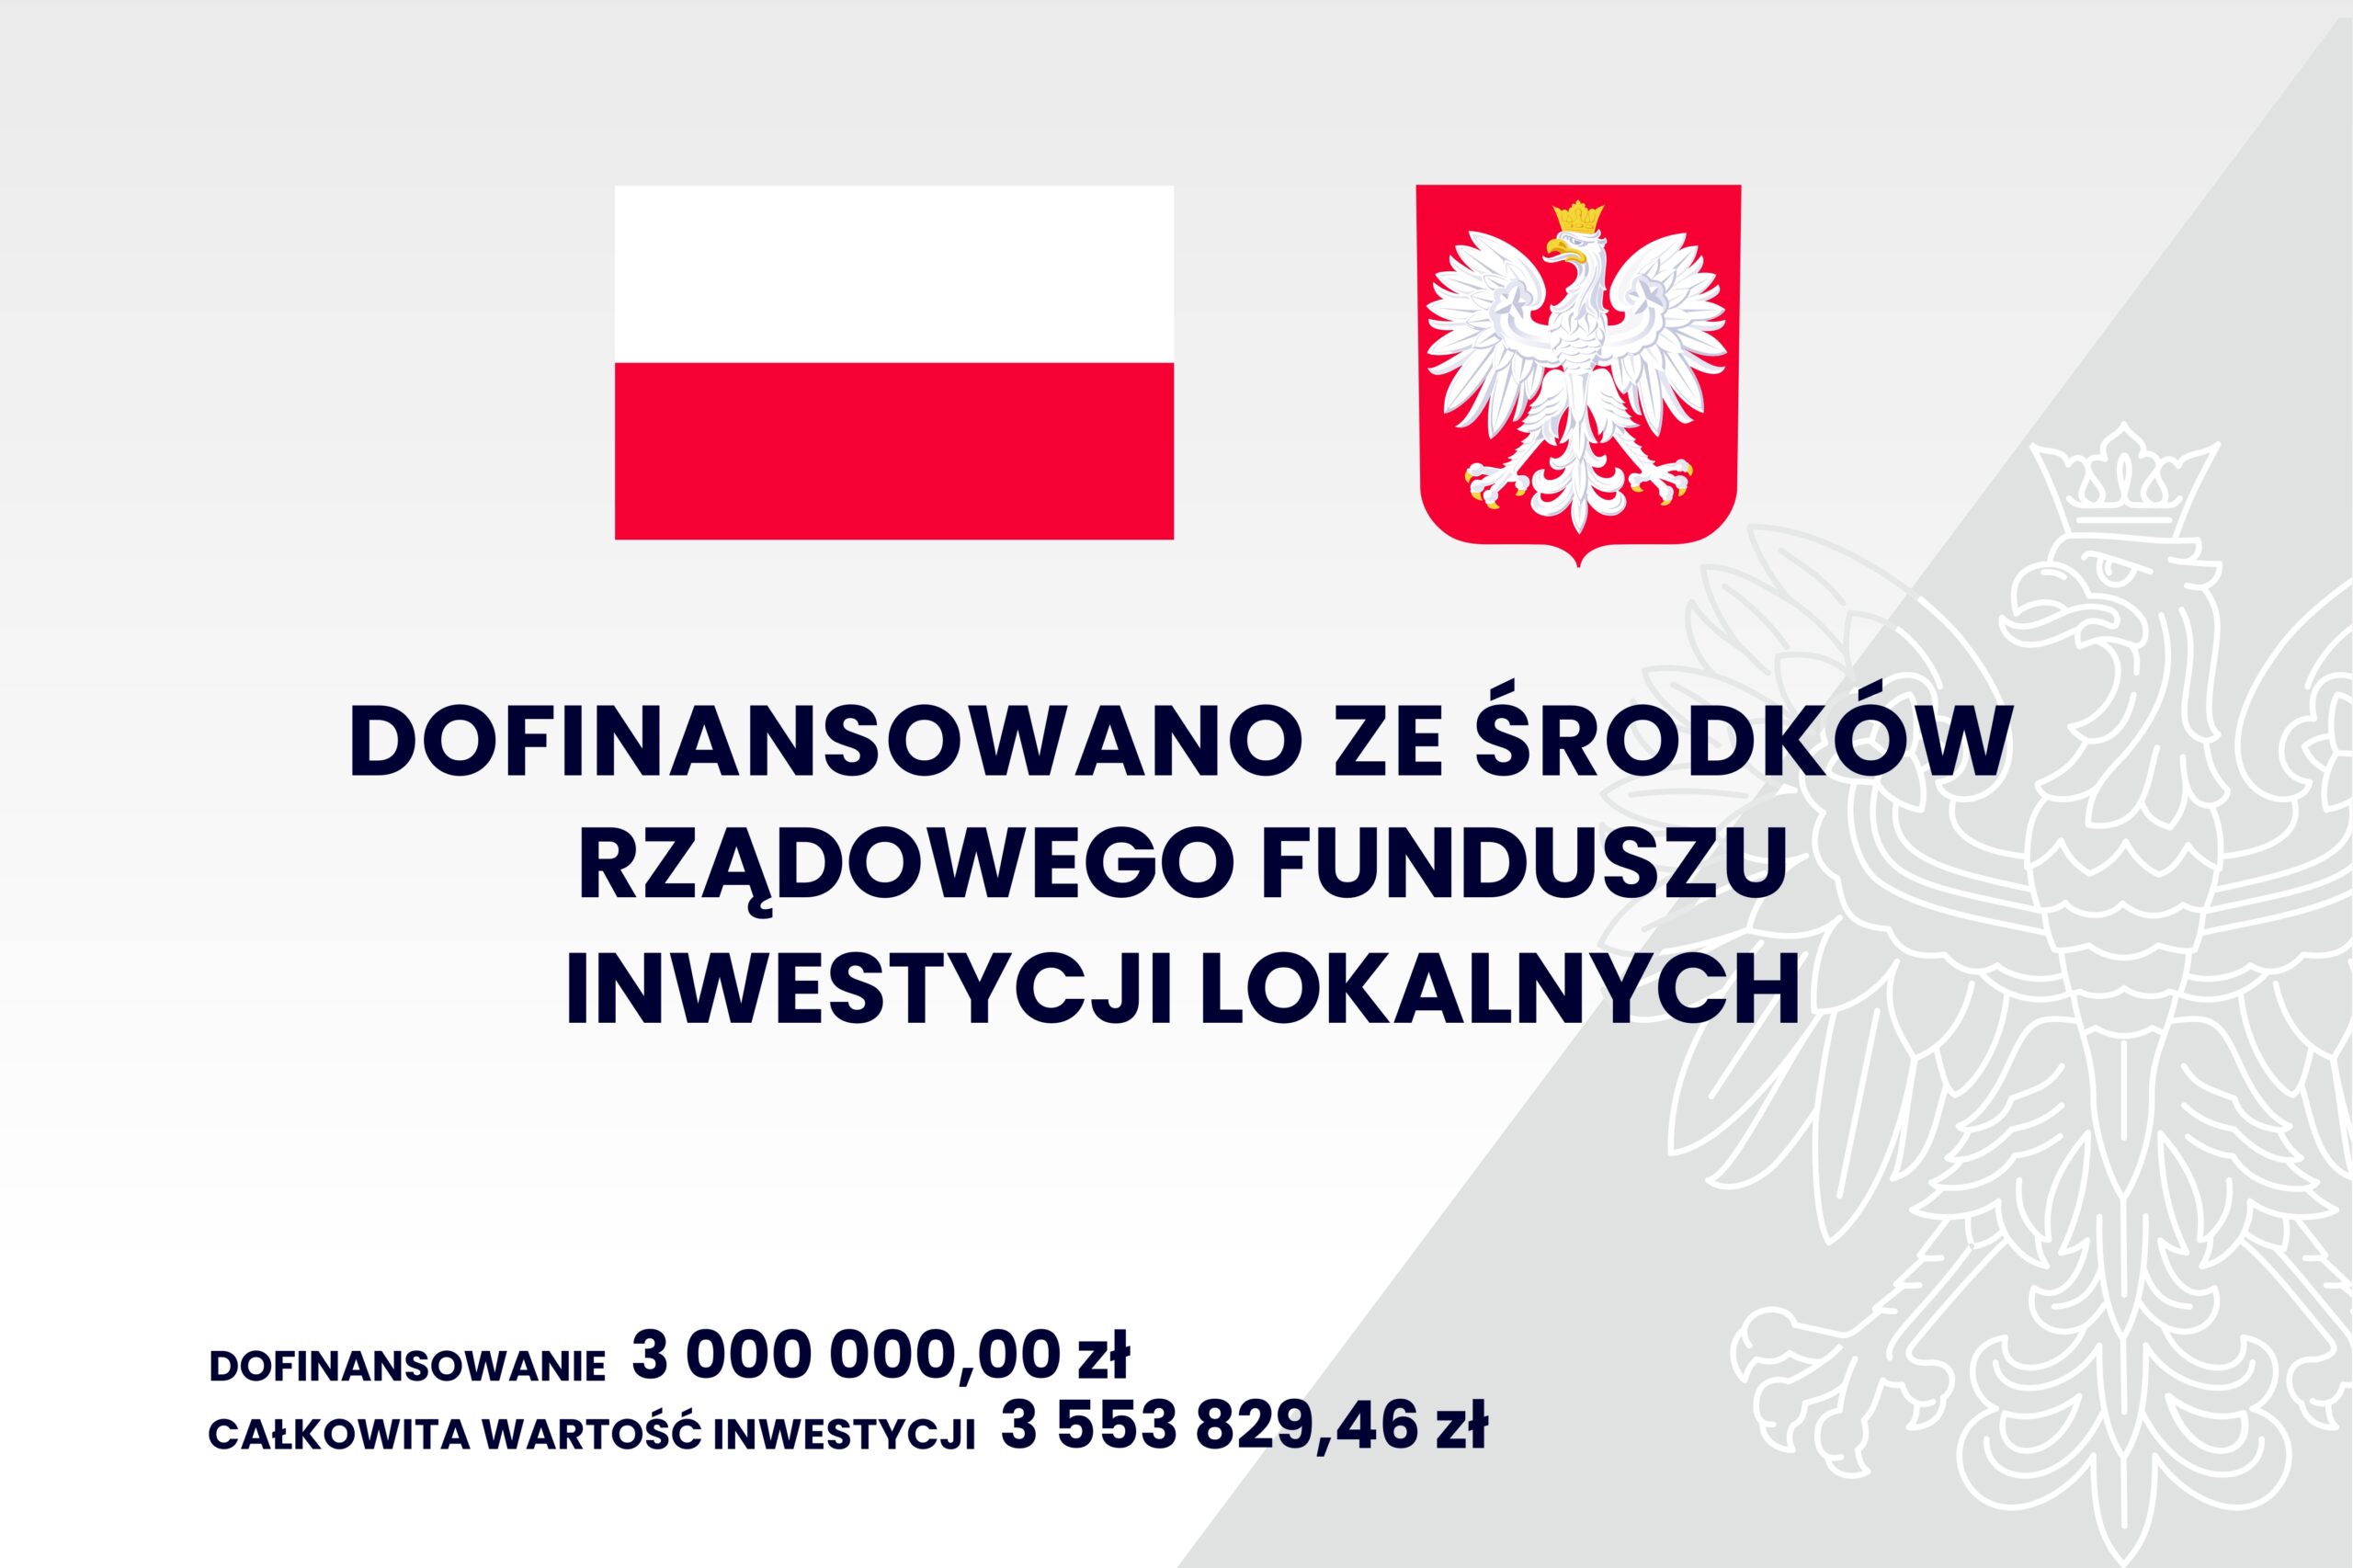 Grafika przedstawia informacje: dofinansowano ze środków rządowego funduszu inwestycji lokalnych; dofinansowanie - 3 000 000,00 zł; całkowita wartość inwestycji - 3 553 829,46 zł; na górze jest flaga i godło Polski